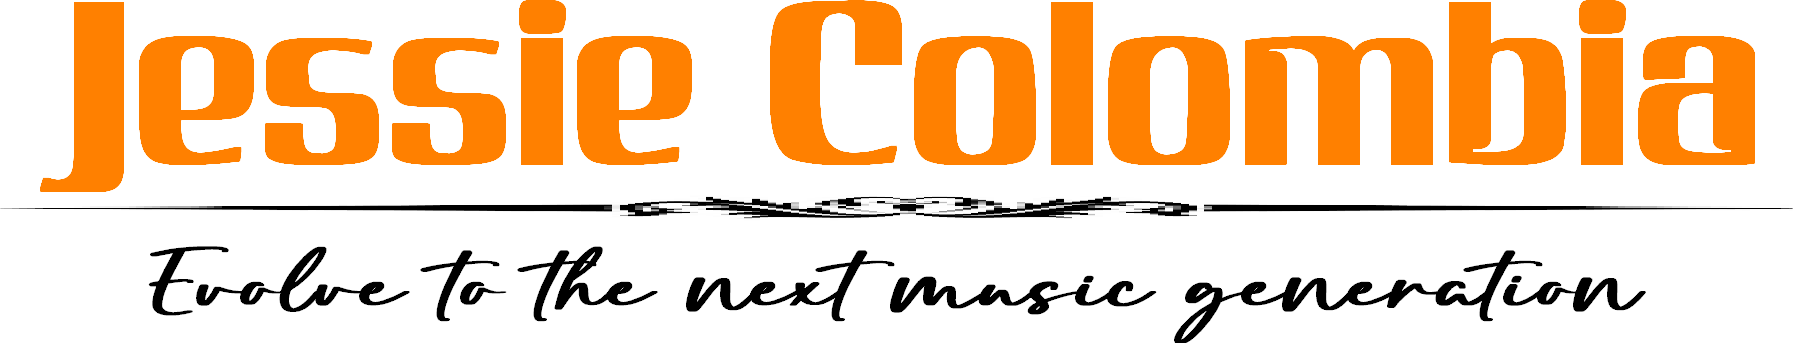 jessie colombia logo